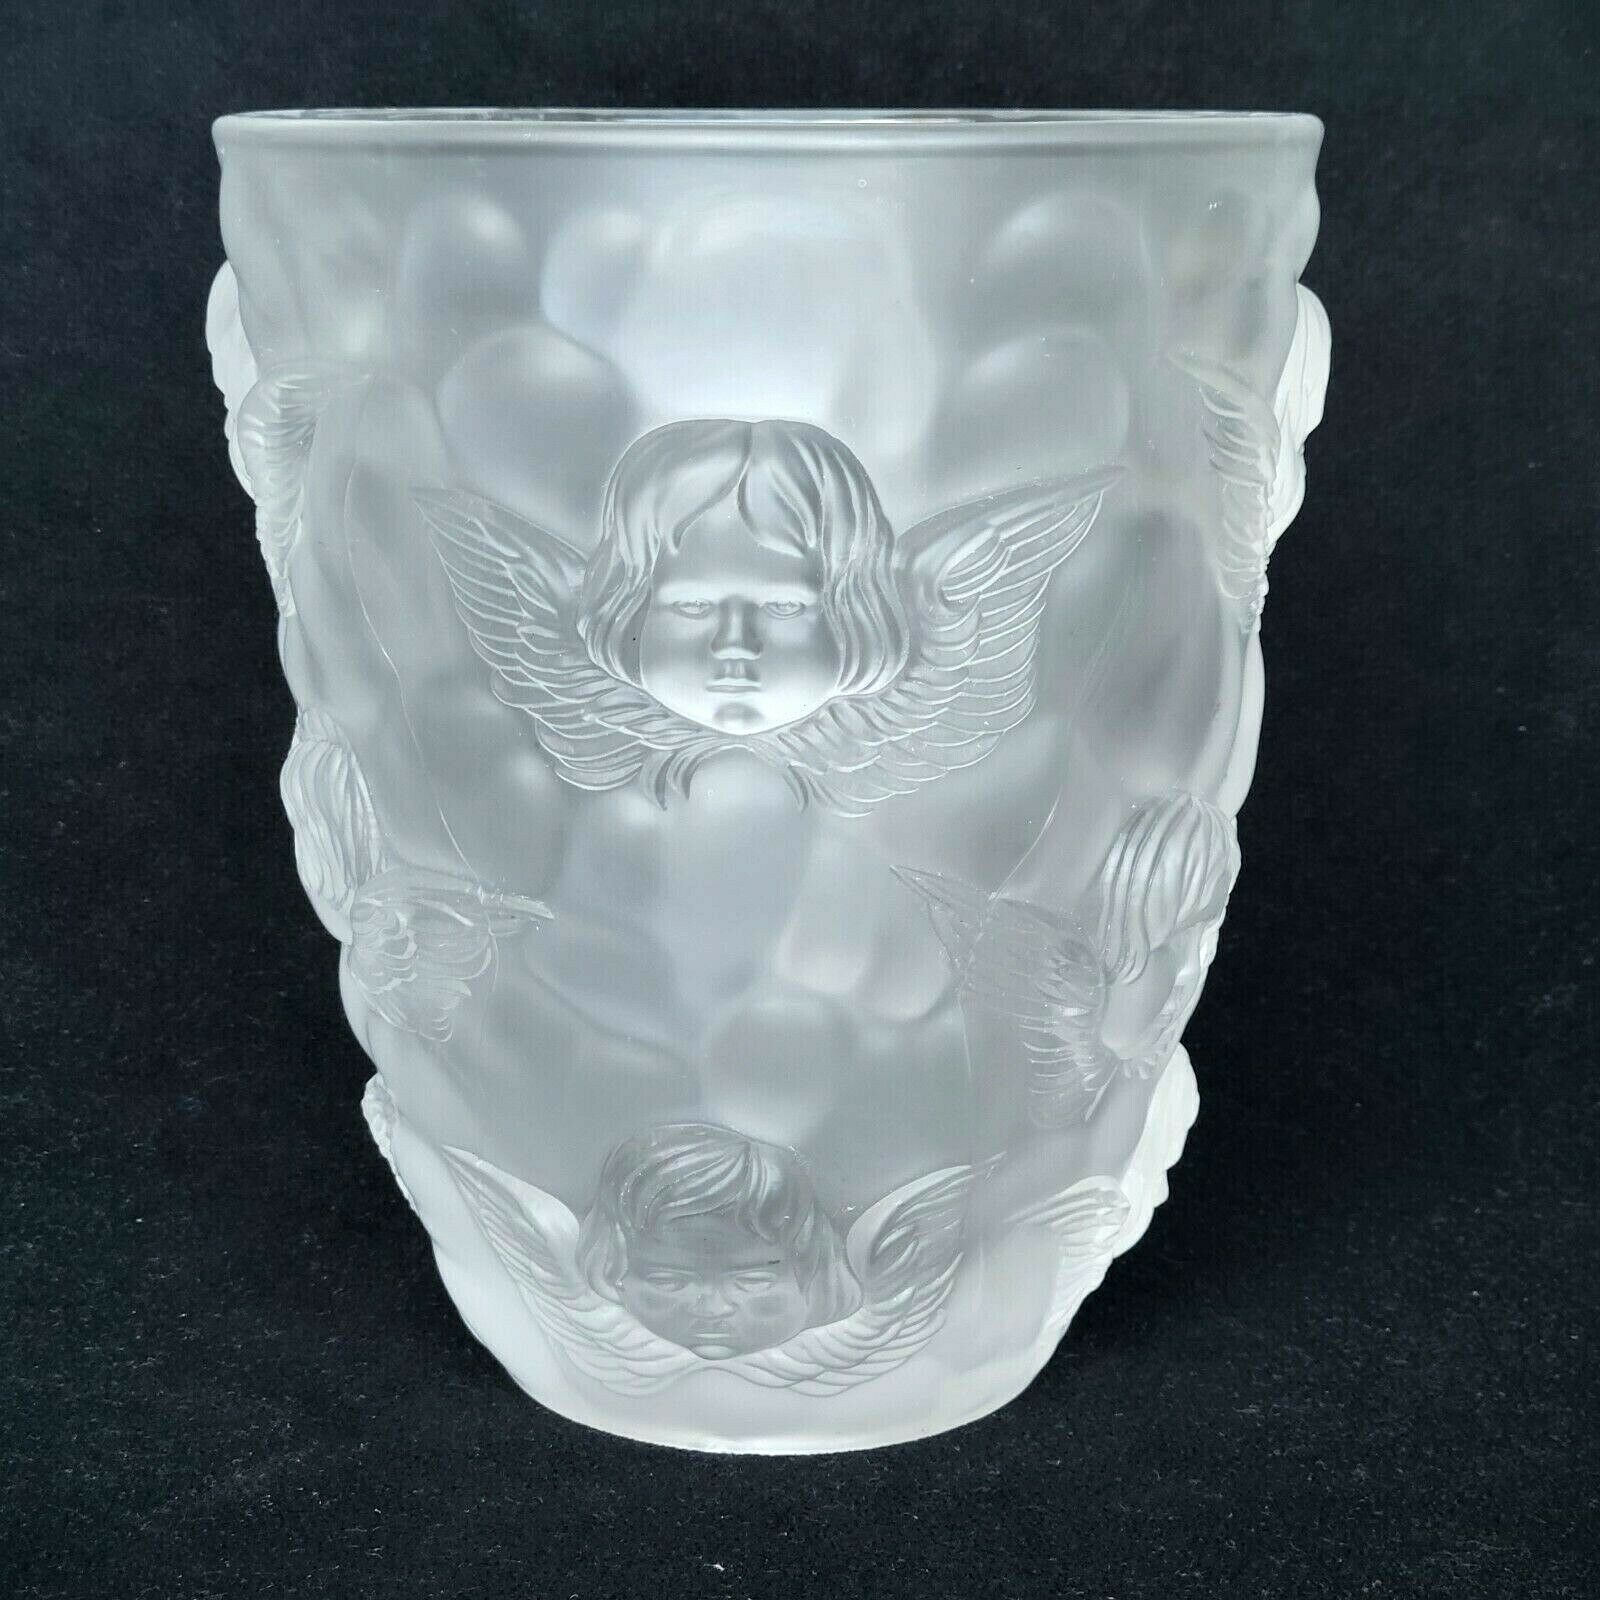 Magnifique vase en cristal moulé satiné dépoli angelots chérubins dlg Lalique 